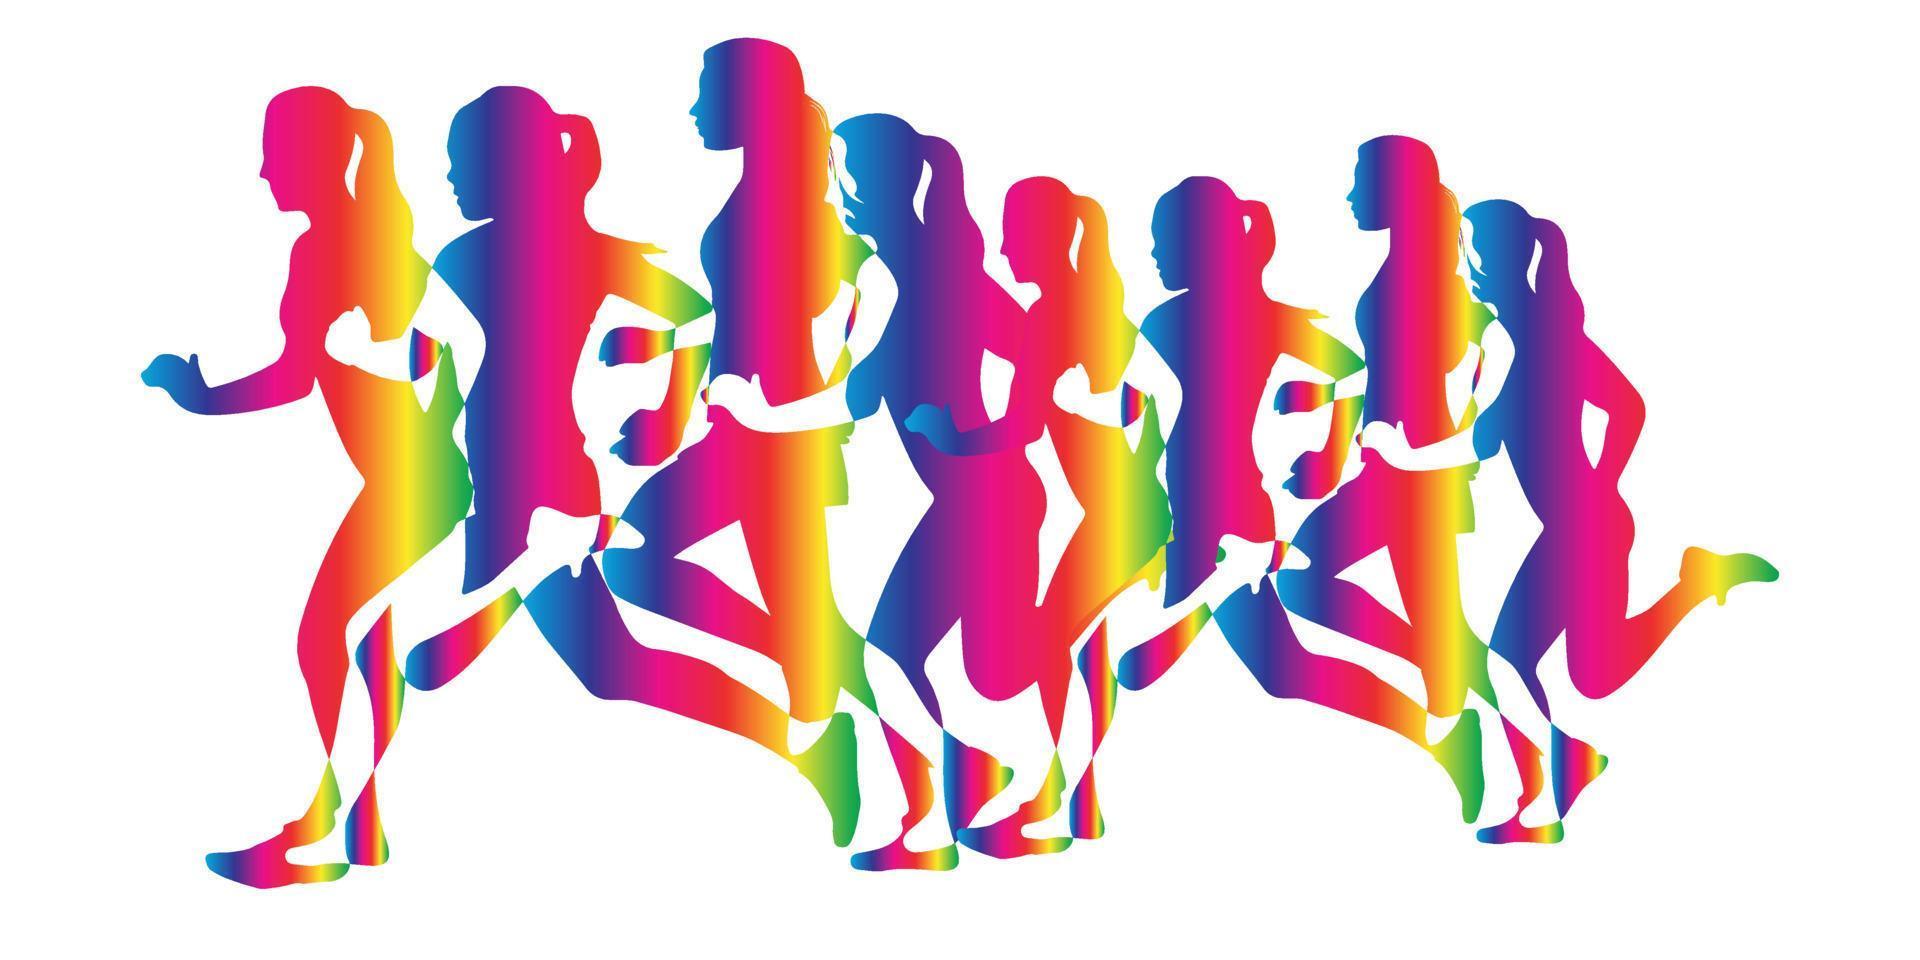 kleurrijke, rennende vrouwelijke silhouet, geïsoleerd op een witte achtergrond, vrouw silhouetten vector